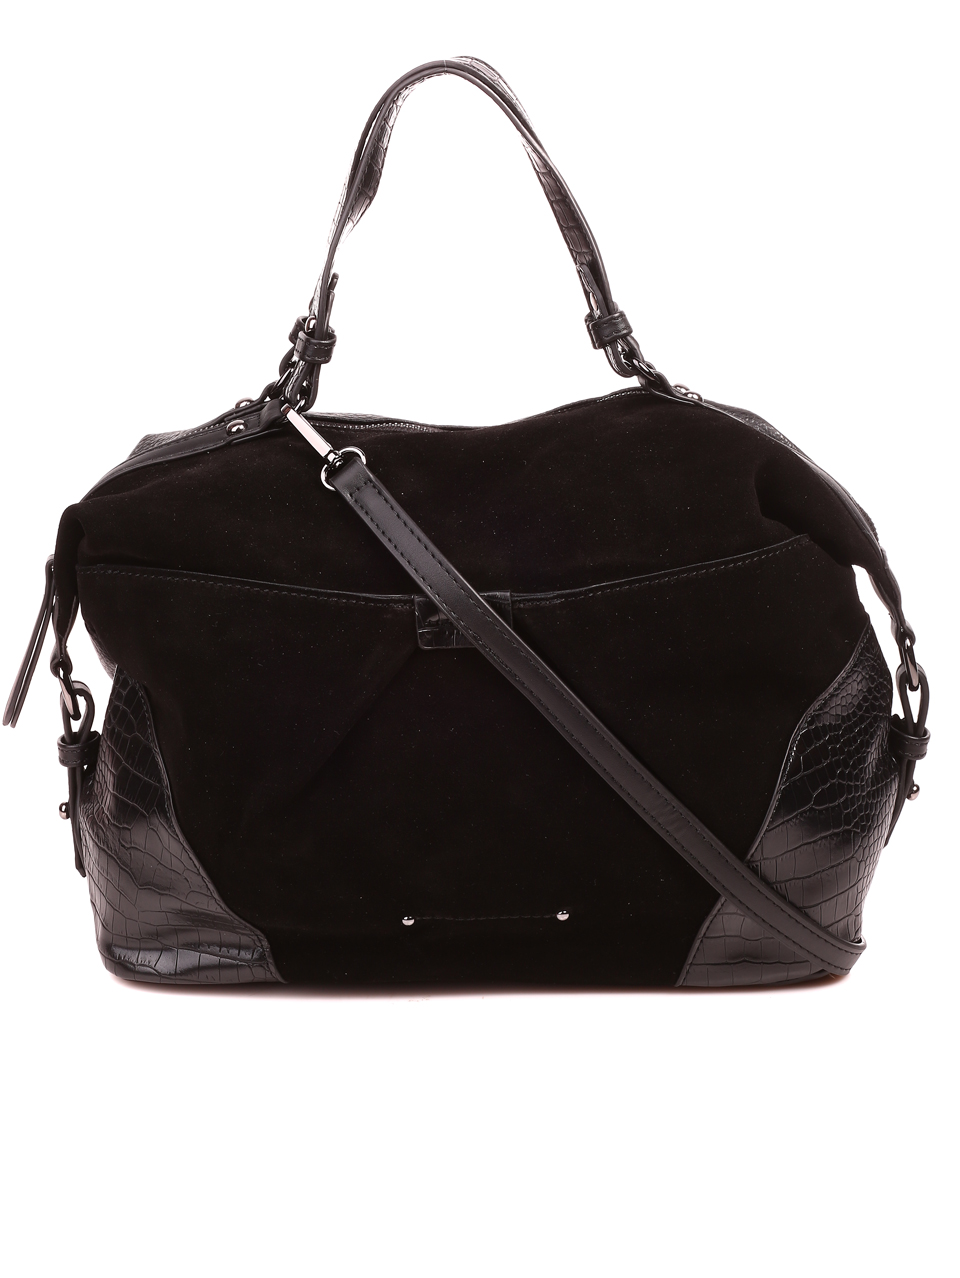 Ежедневна дамска чанта от велур в черно 9Q-22603 black